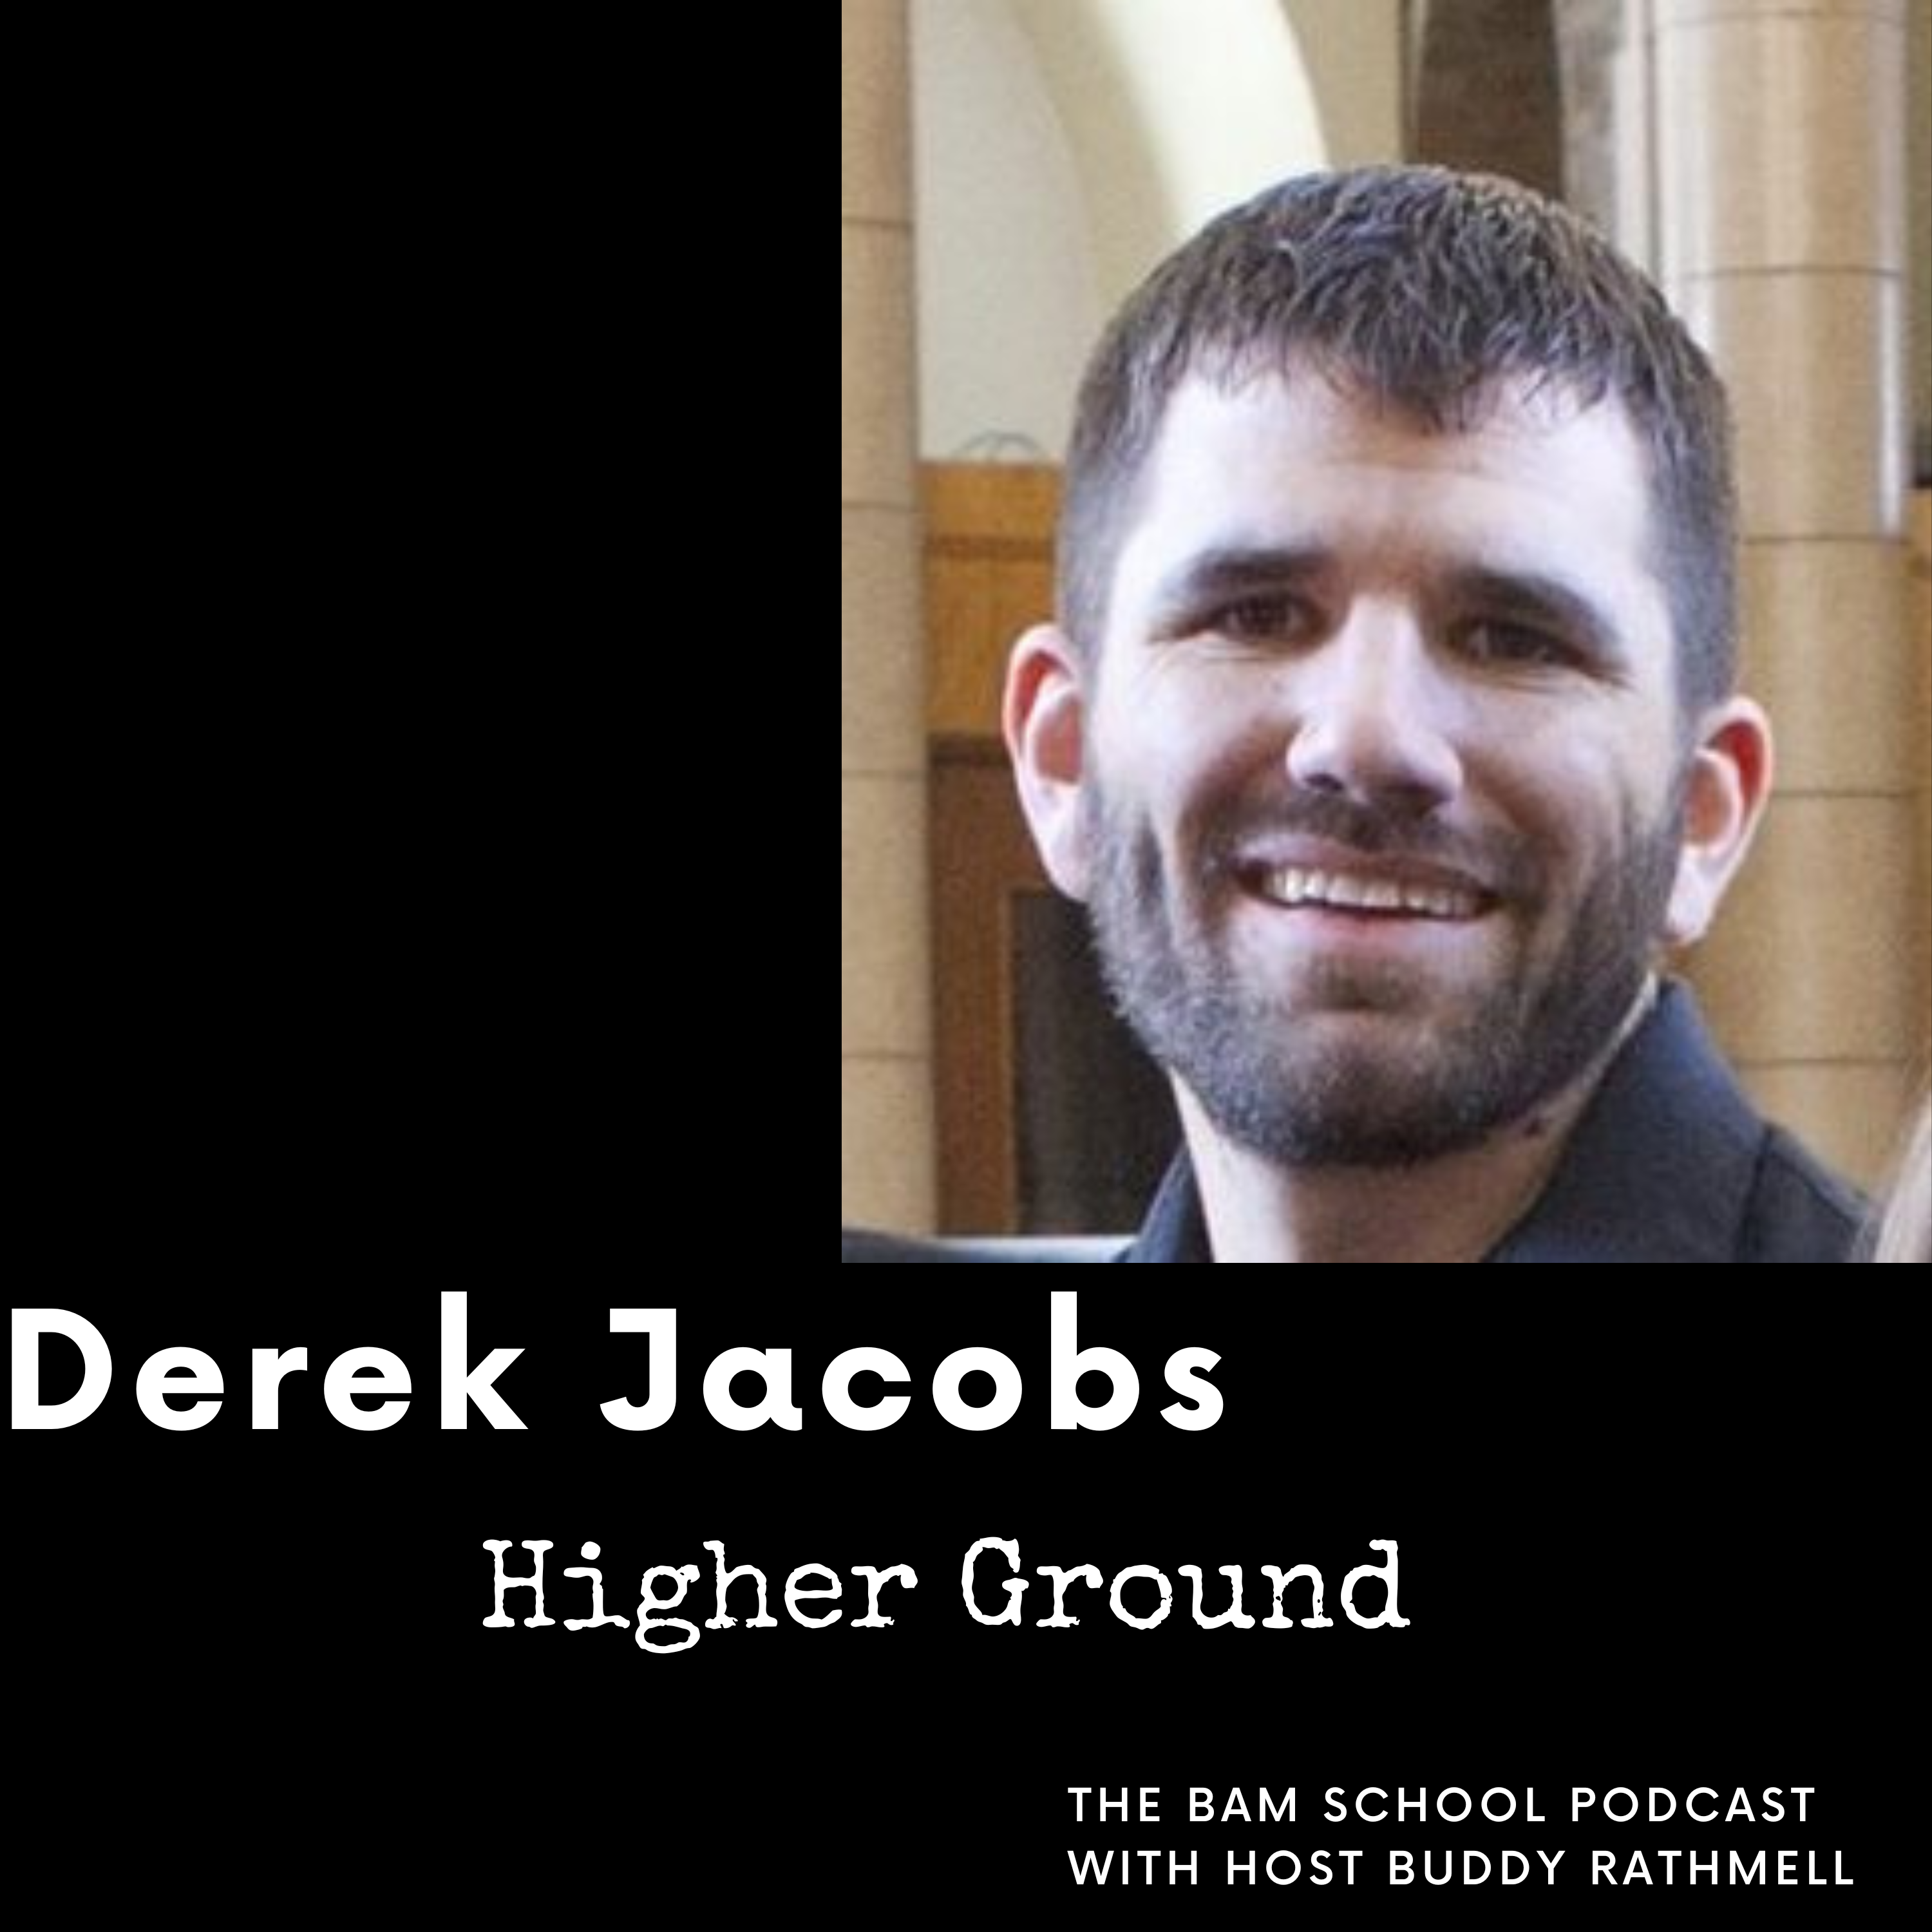 Higher Ground with Derek Jacobs